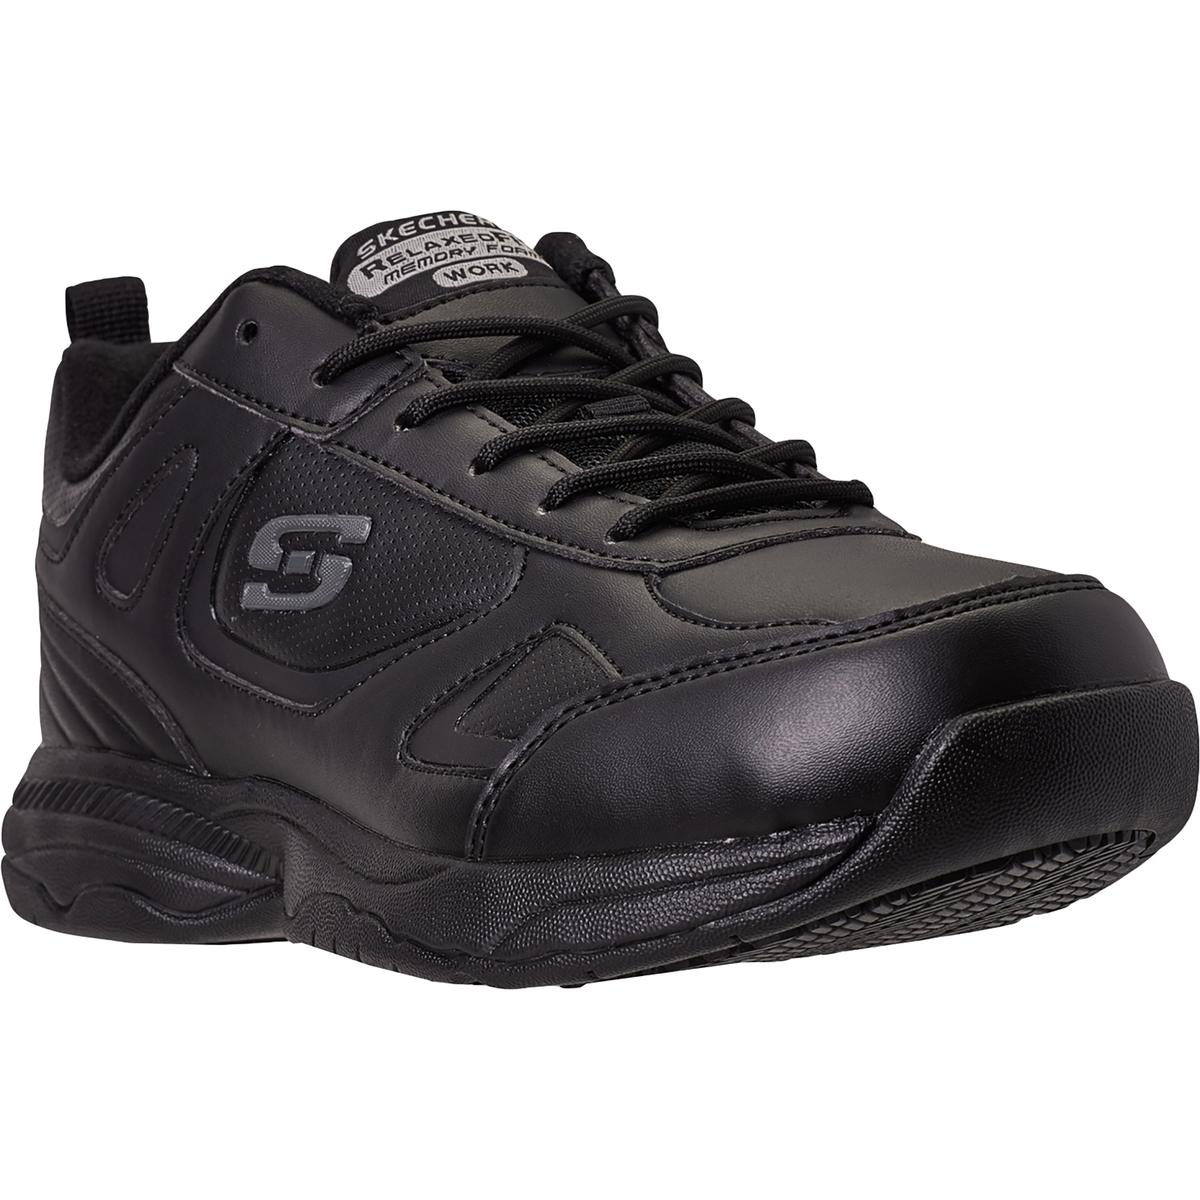 Skechers Mens Dighton Black Work Shoes Sneakers 10.5 Medium (D) BHFO ...